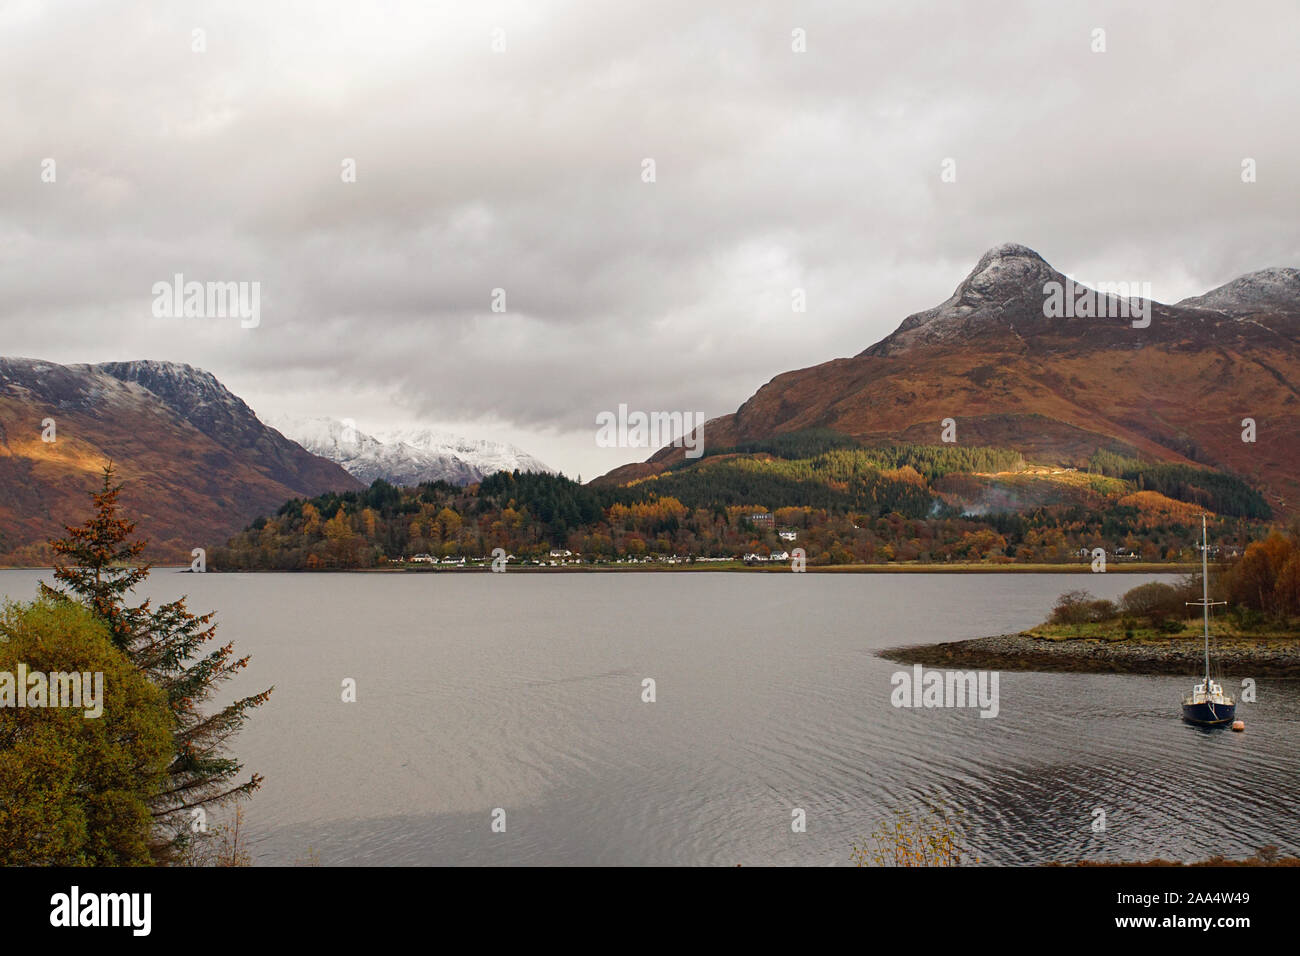 Loch Leven hacia Invercoe Village y la nieve rematada Pap de Glencoe con el lago en primer plano Foto de stock